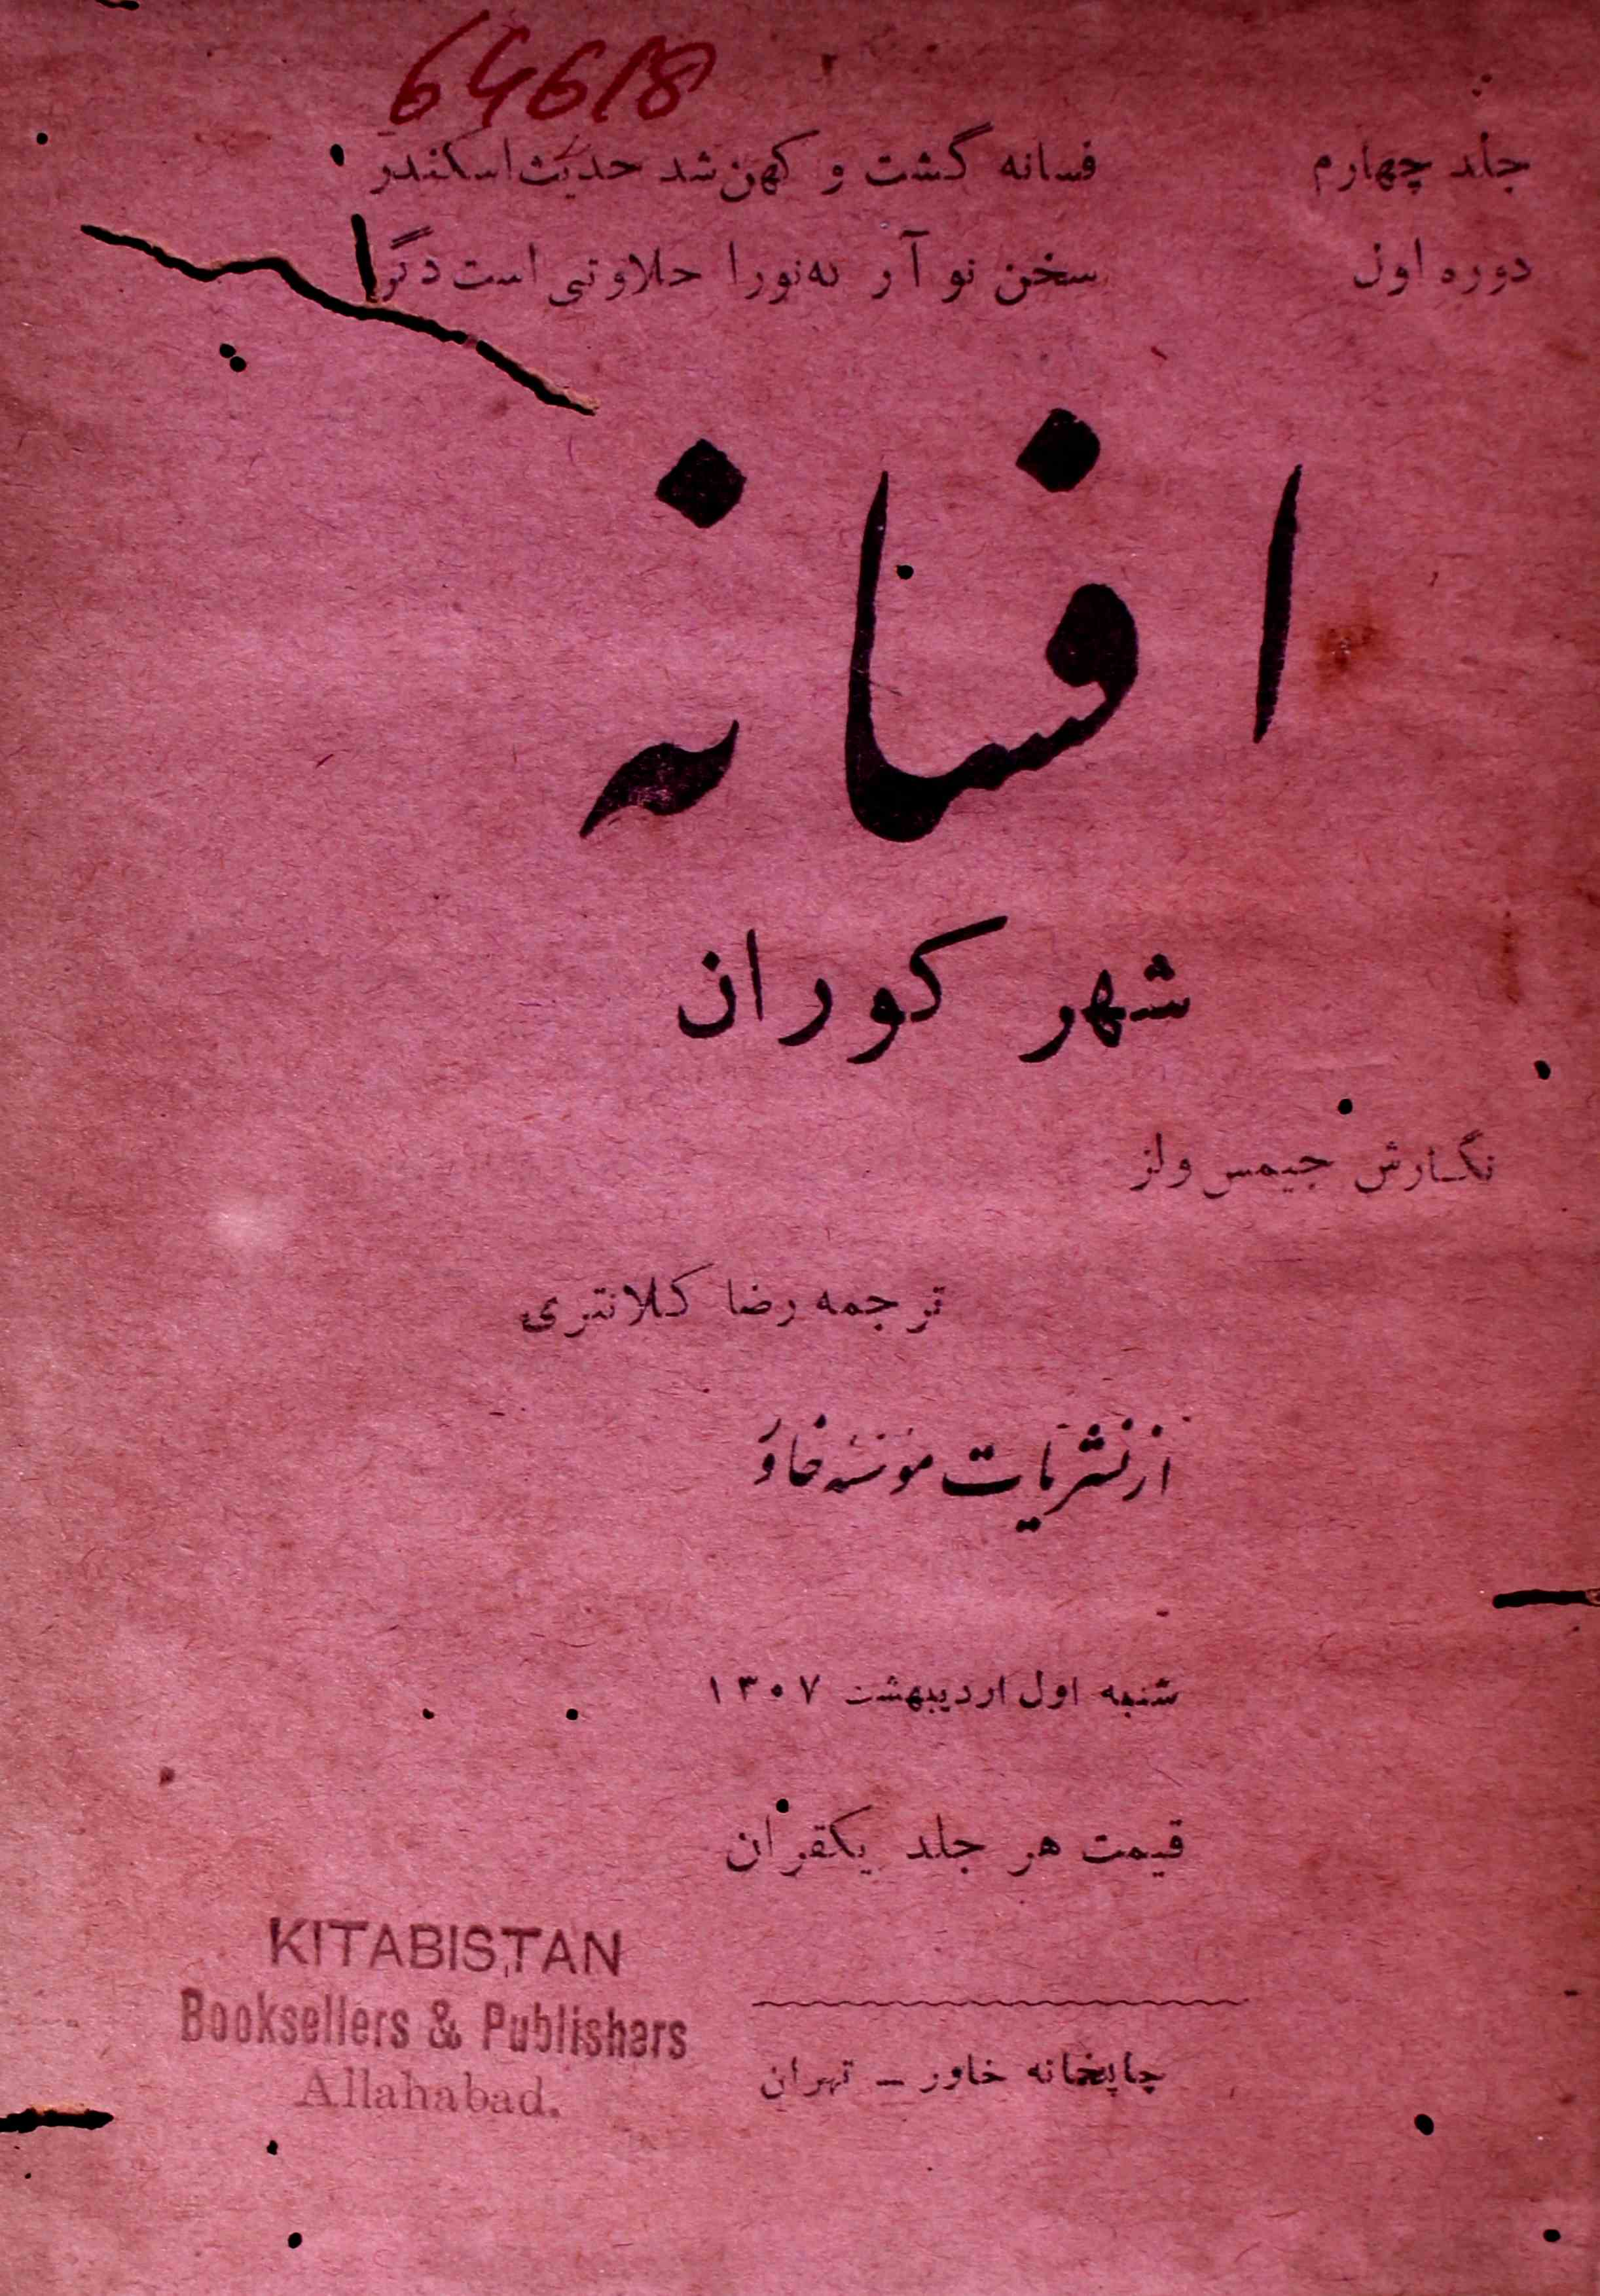 अफ़्साना- Magazine by चाप ख़ाना ख़ावर, तहरान, चाप खाना, ईरान, सिलसिला पब्लिकेशन, कराची 